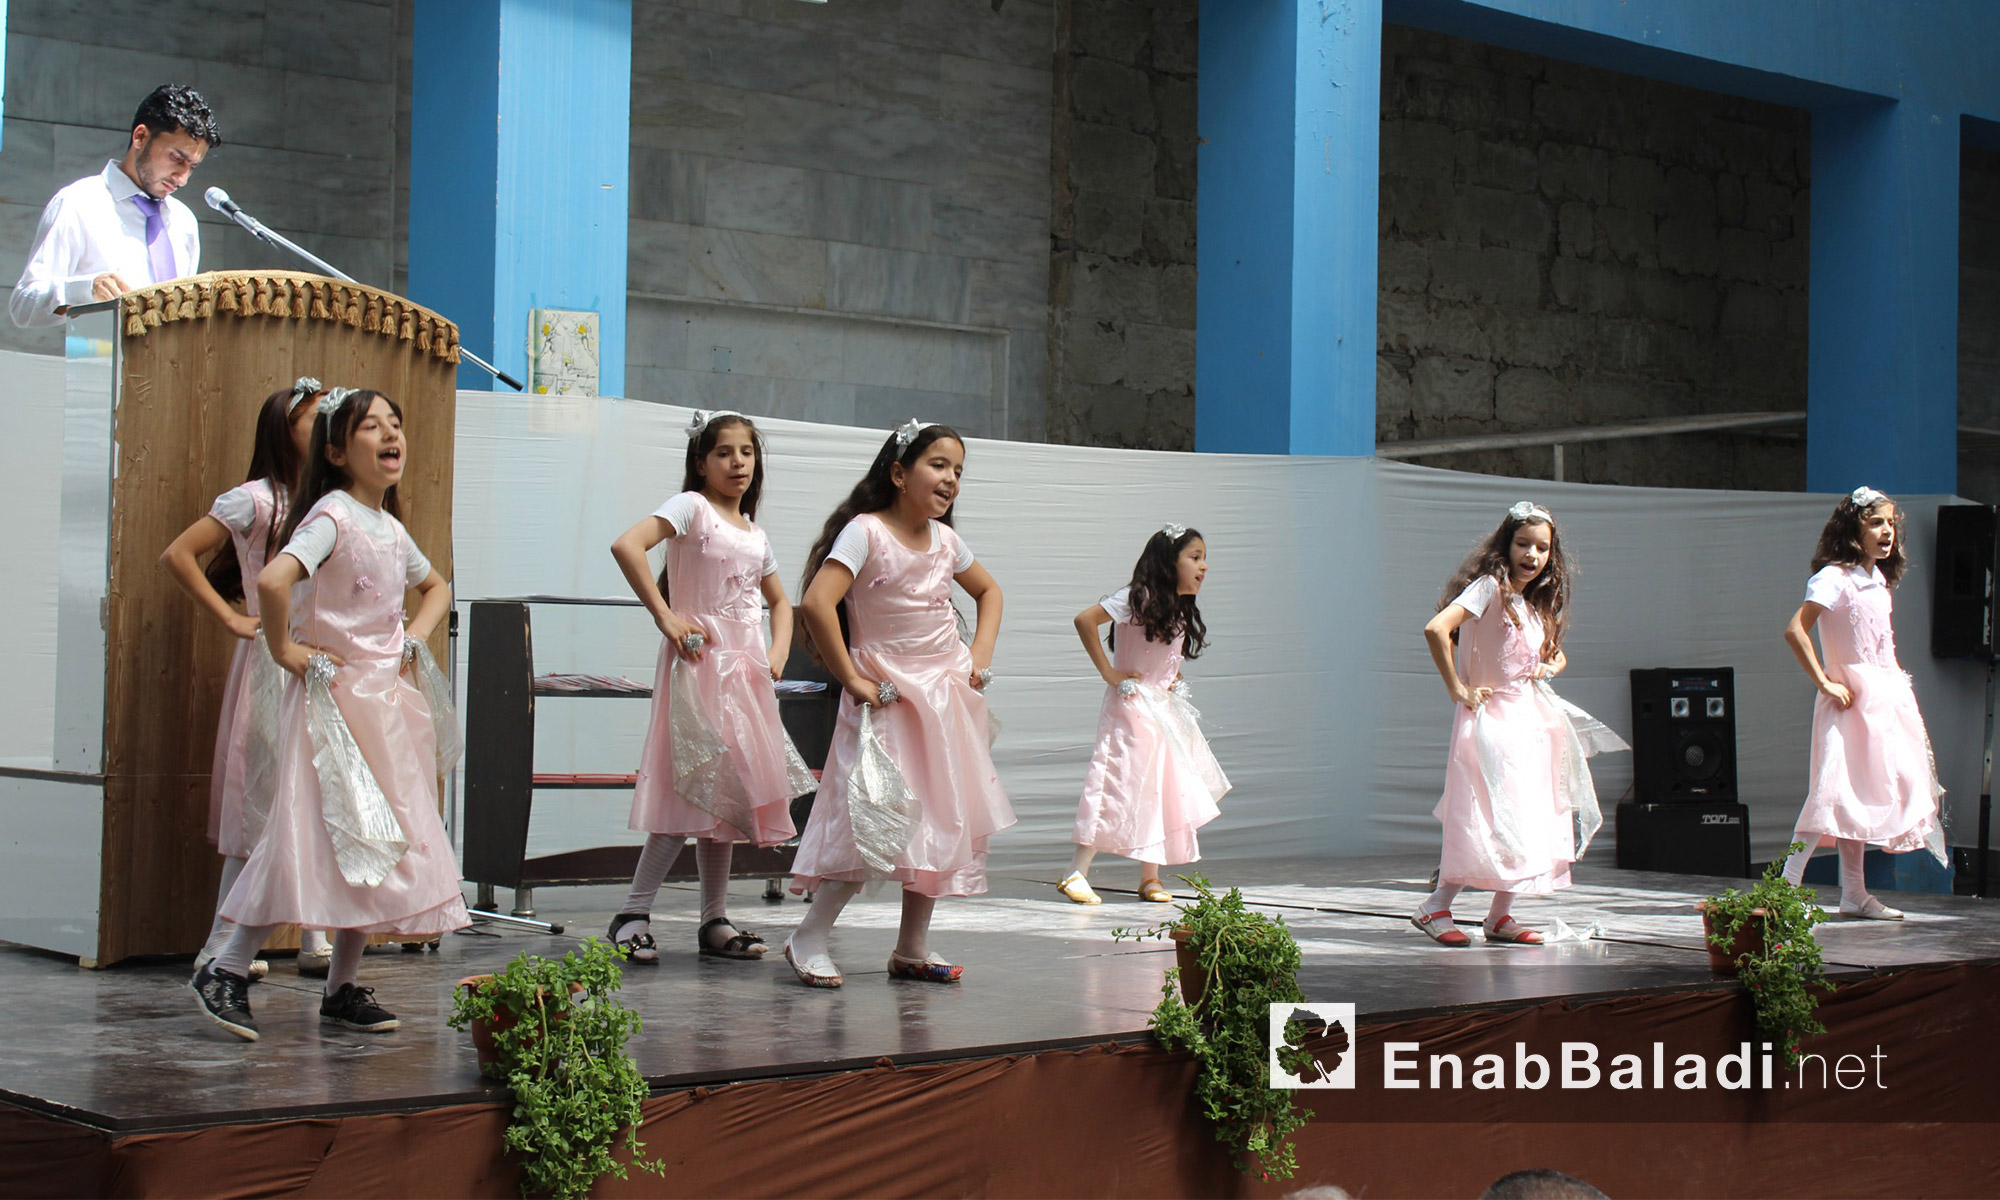 مشهد راقص لطلاب مجموعة "علمني" التعليمية في حي الوعر المحاصر بحمص - الاثنين 25 تموز (عنب بلدي)